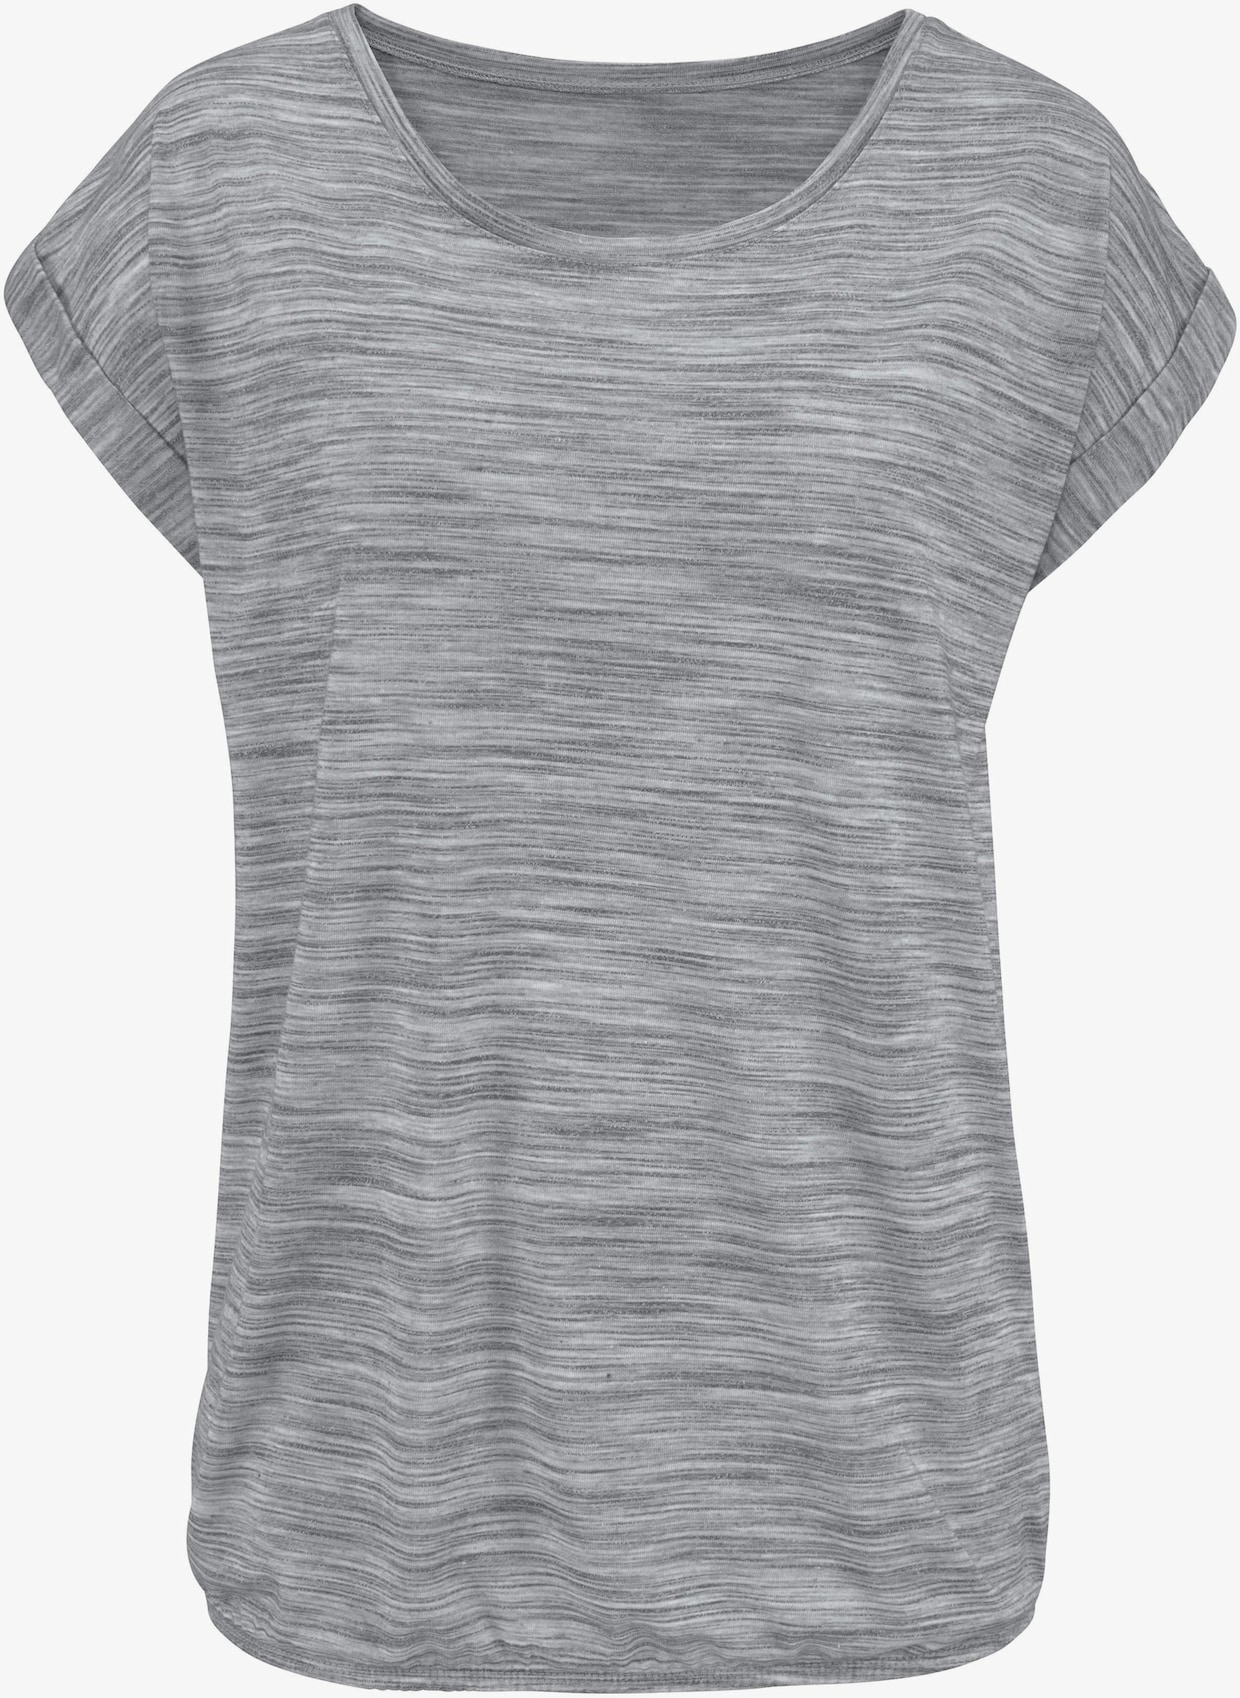 Beachtime T-shirt - mûre chiné, gris chiné